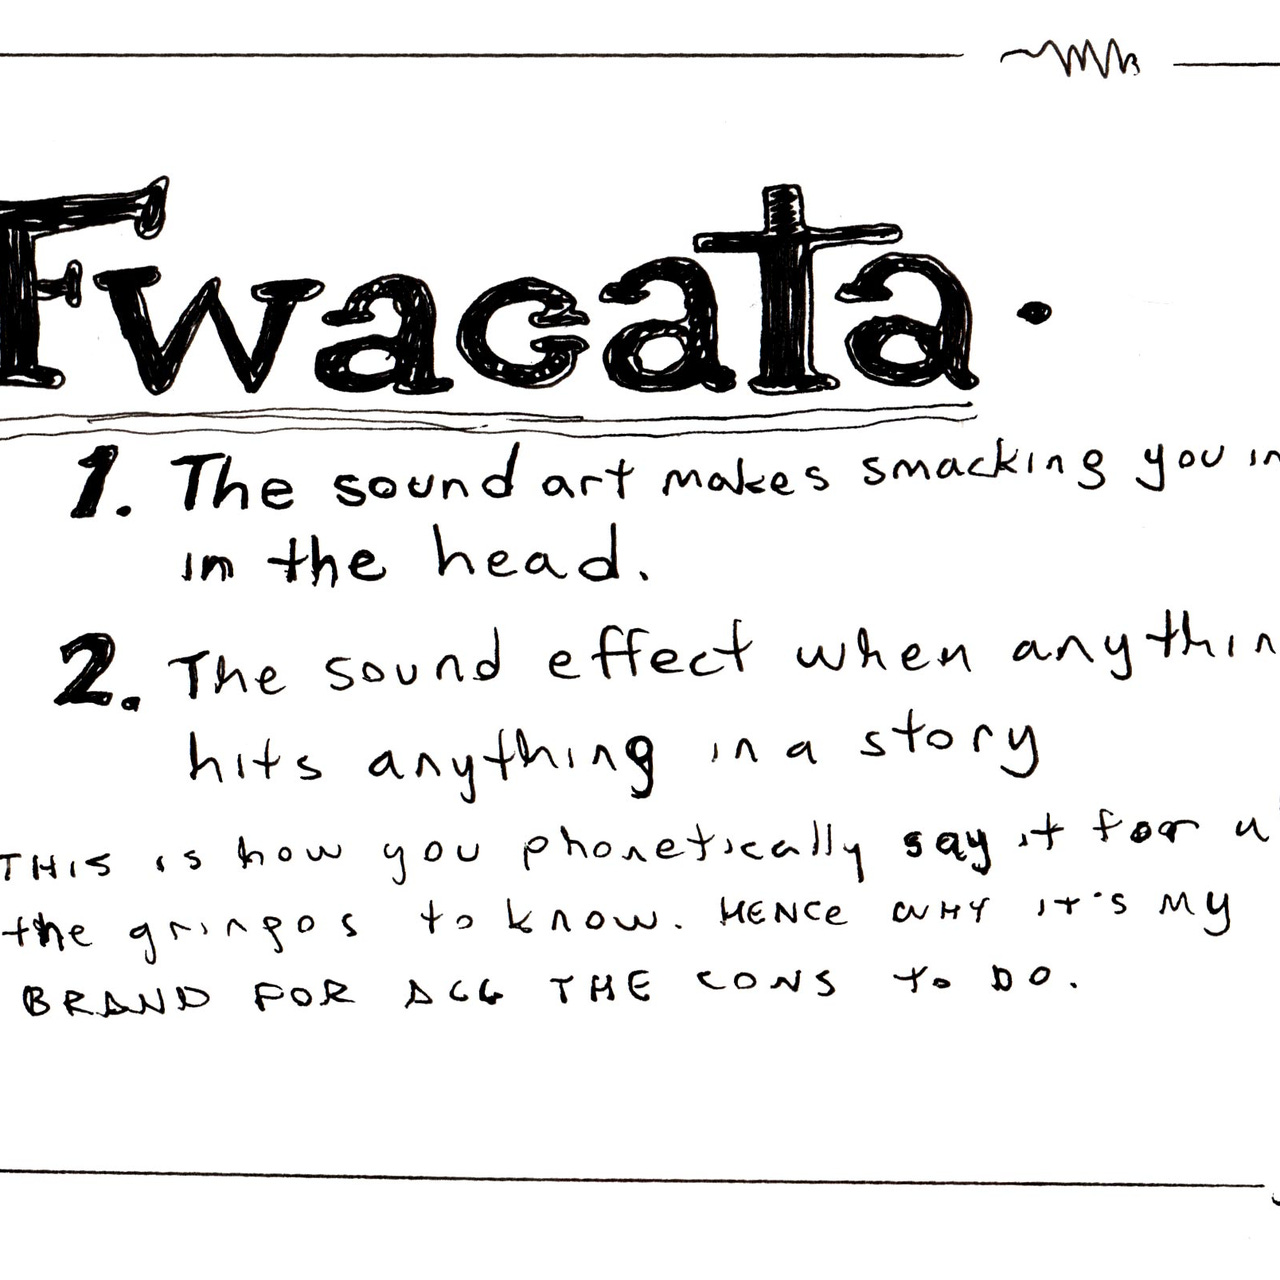 Artwork for FWACATA’s Newsletter